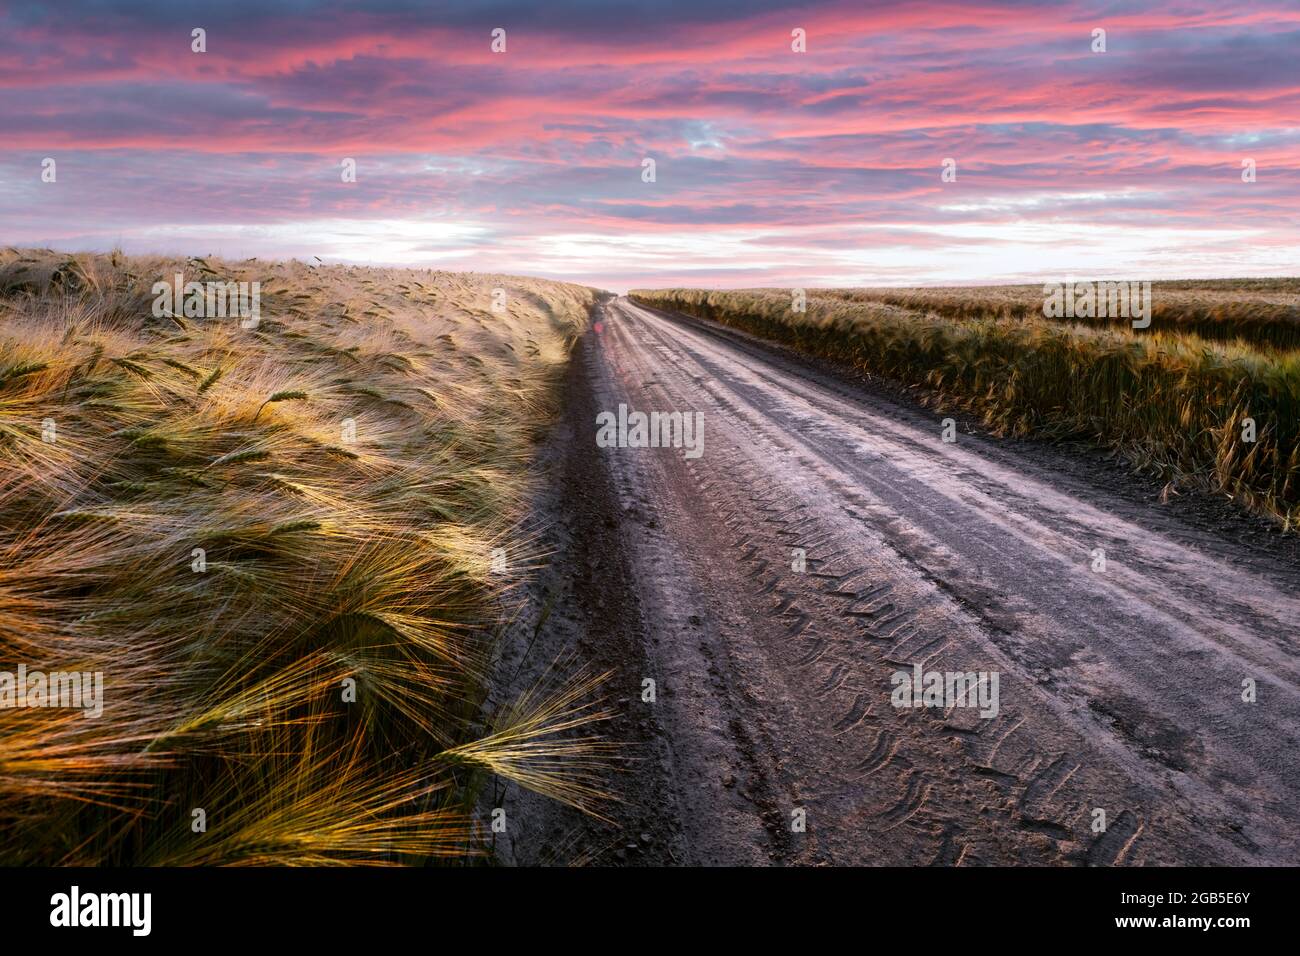 Strada in campo con grano maturo e cielo rosa tramonto con nuvole. Fotografia di paesaggio Foto Stock